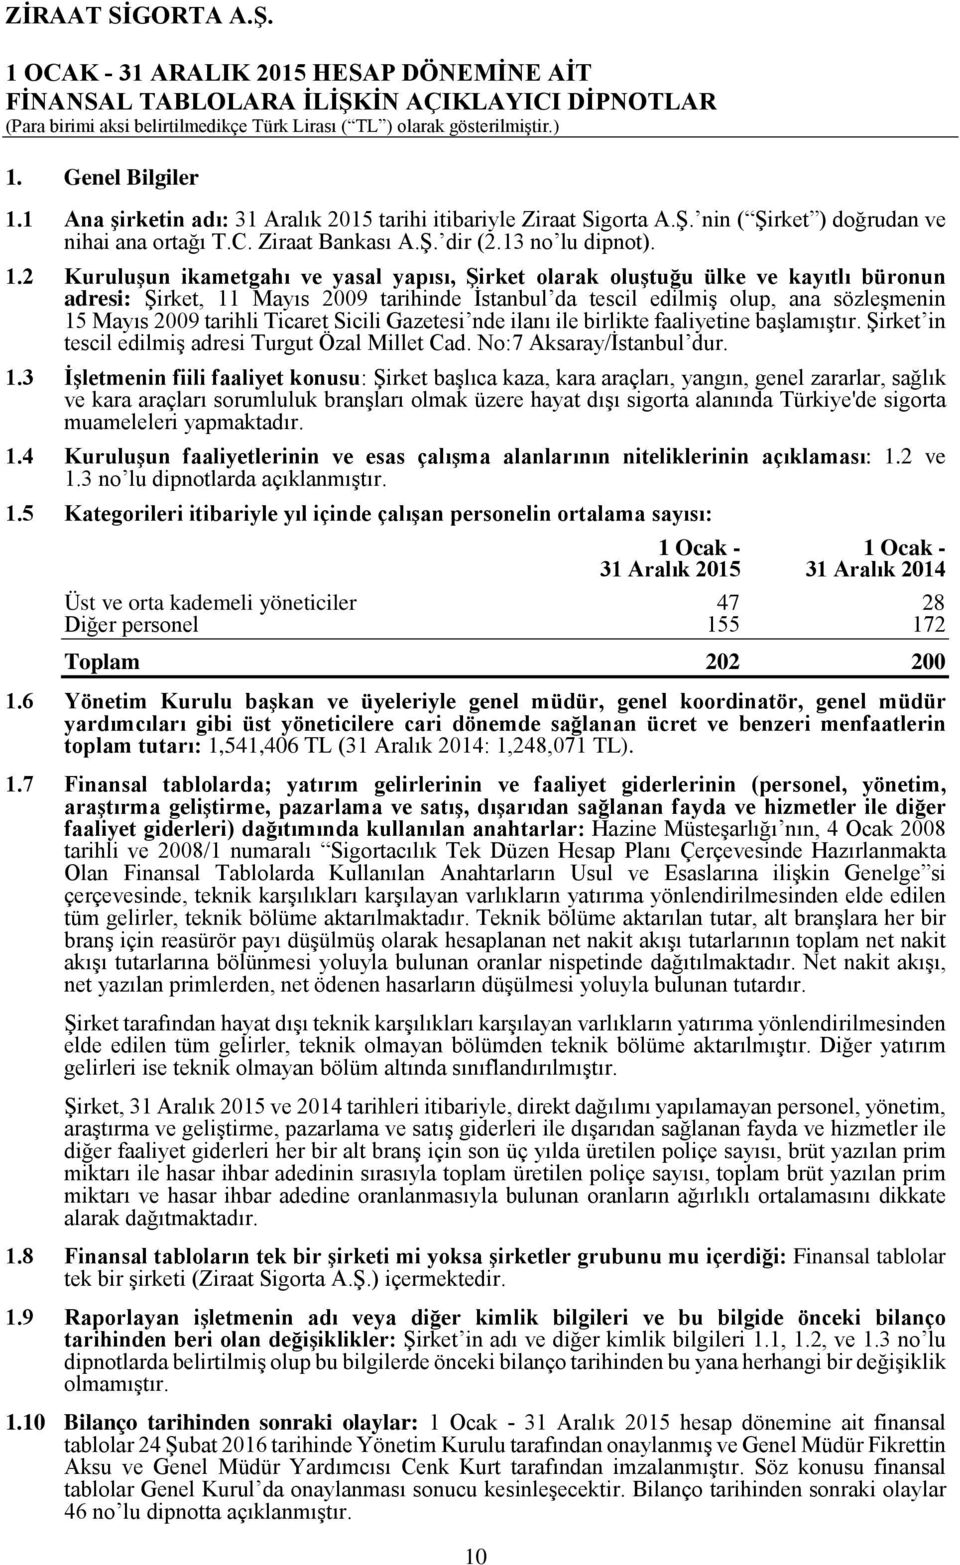 2 Kuruluşun ikametgahı ve yasal yapısı, Şirket olarak oluştuğu ülke ve kayıtlı büronun adresi: Şirket, 11 Mayıs 2009 tarihinde İstanbul da tescil edilmiş olup, ana sözleşmenin 15 Mayıs 2009 tarihli